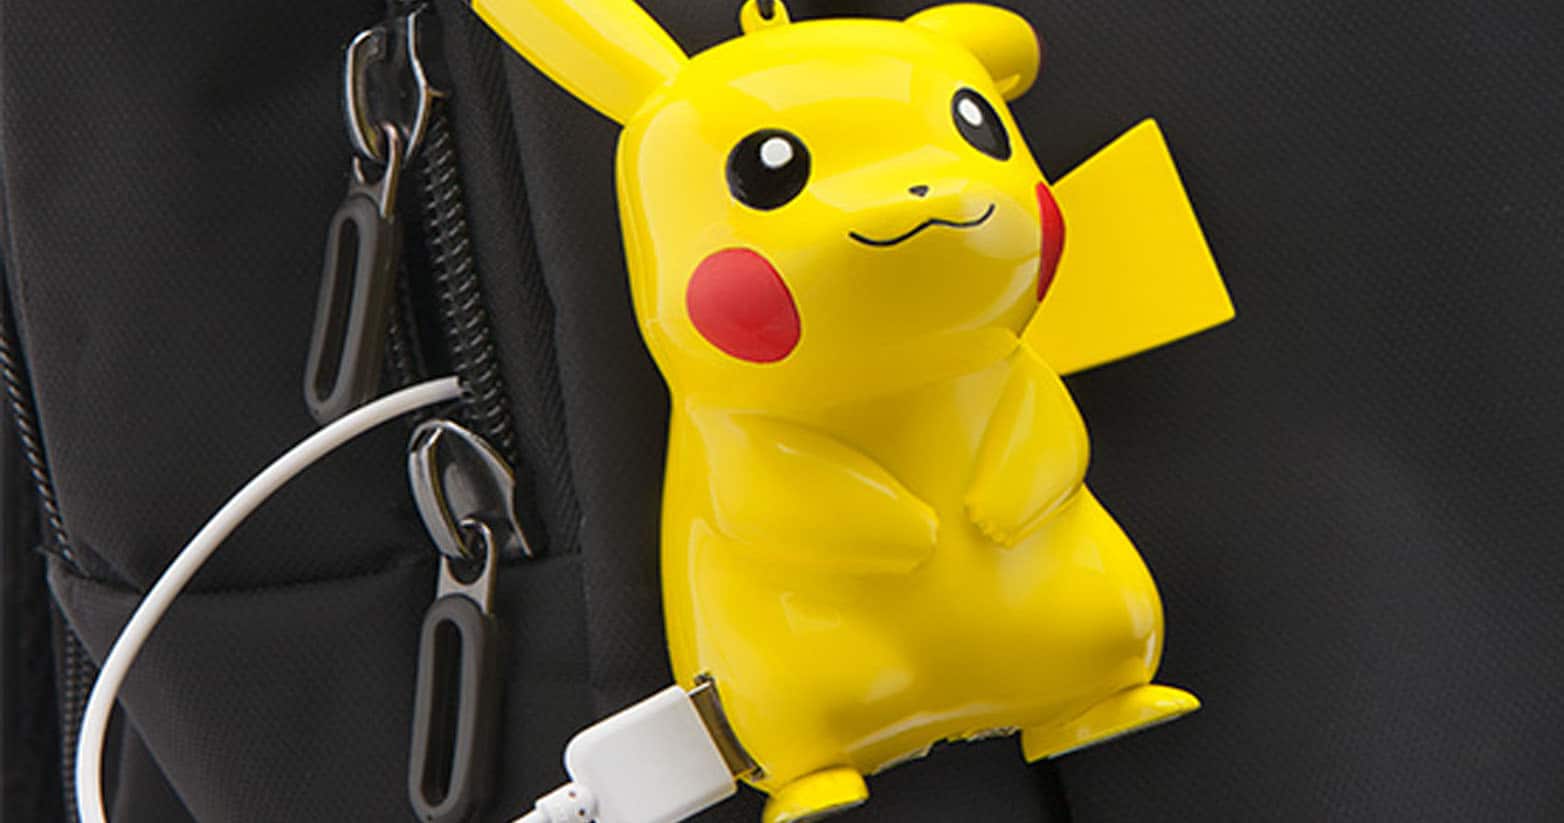 Pokemon Pikachu Portable Charger